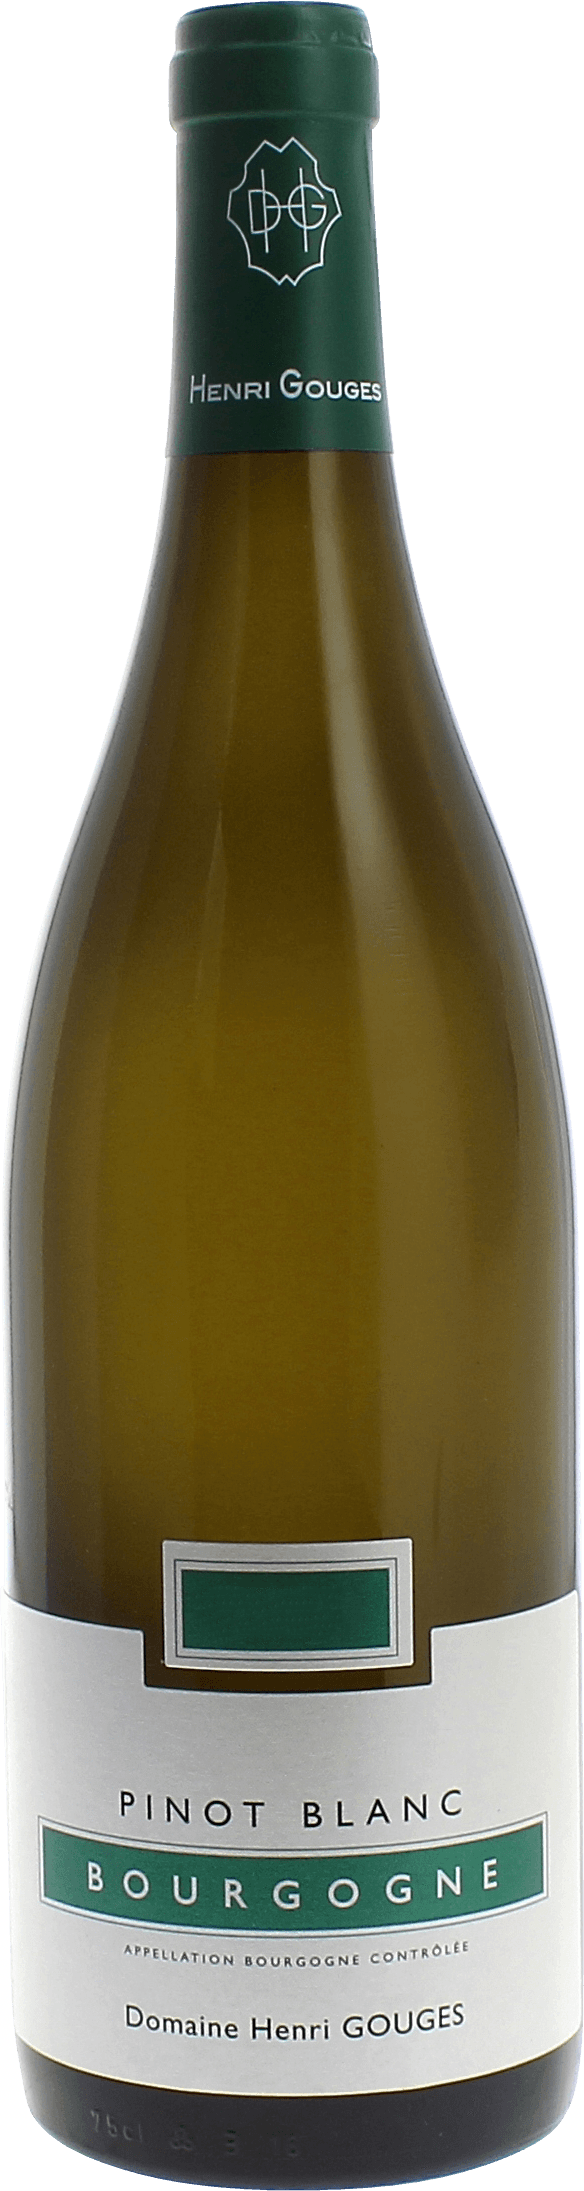 Bourgogne pinot blanc 2015 Domaine GOUGES Henri, Bourgogne blanc